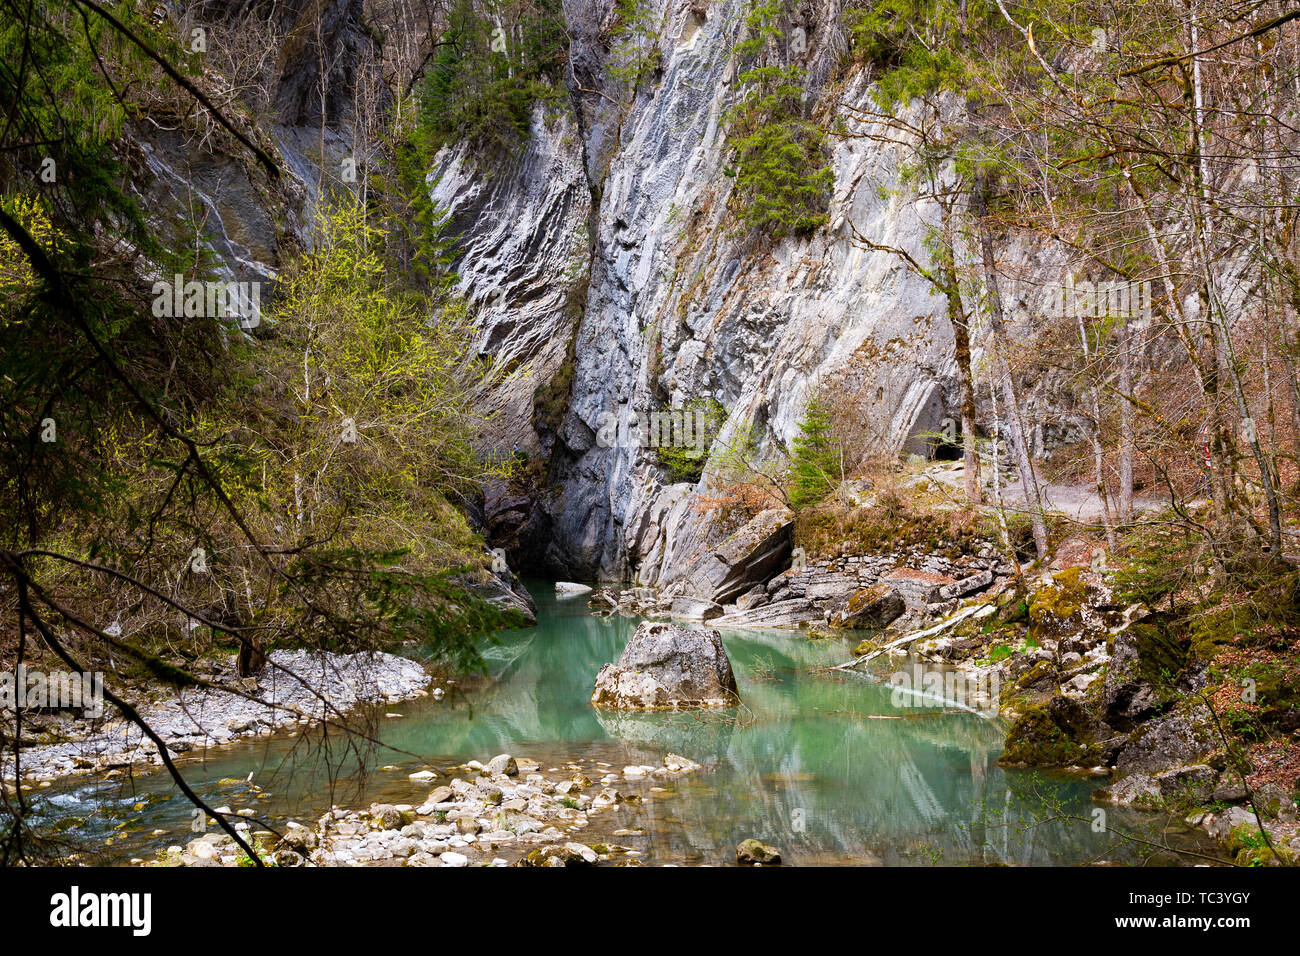 Gorges de la Jogne river canyon à Broc, Suisse Banque D'Images